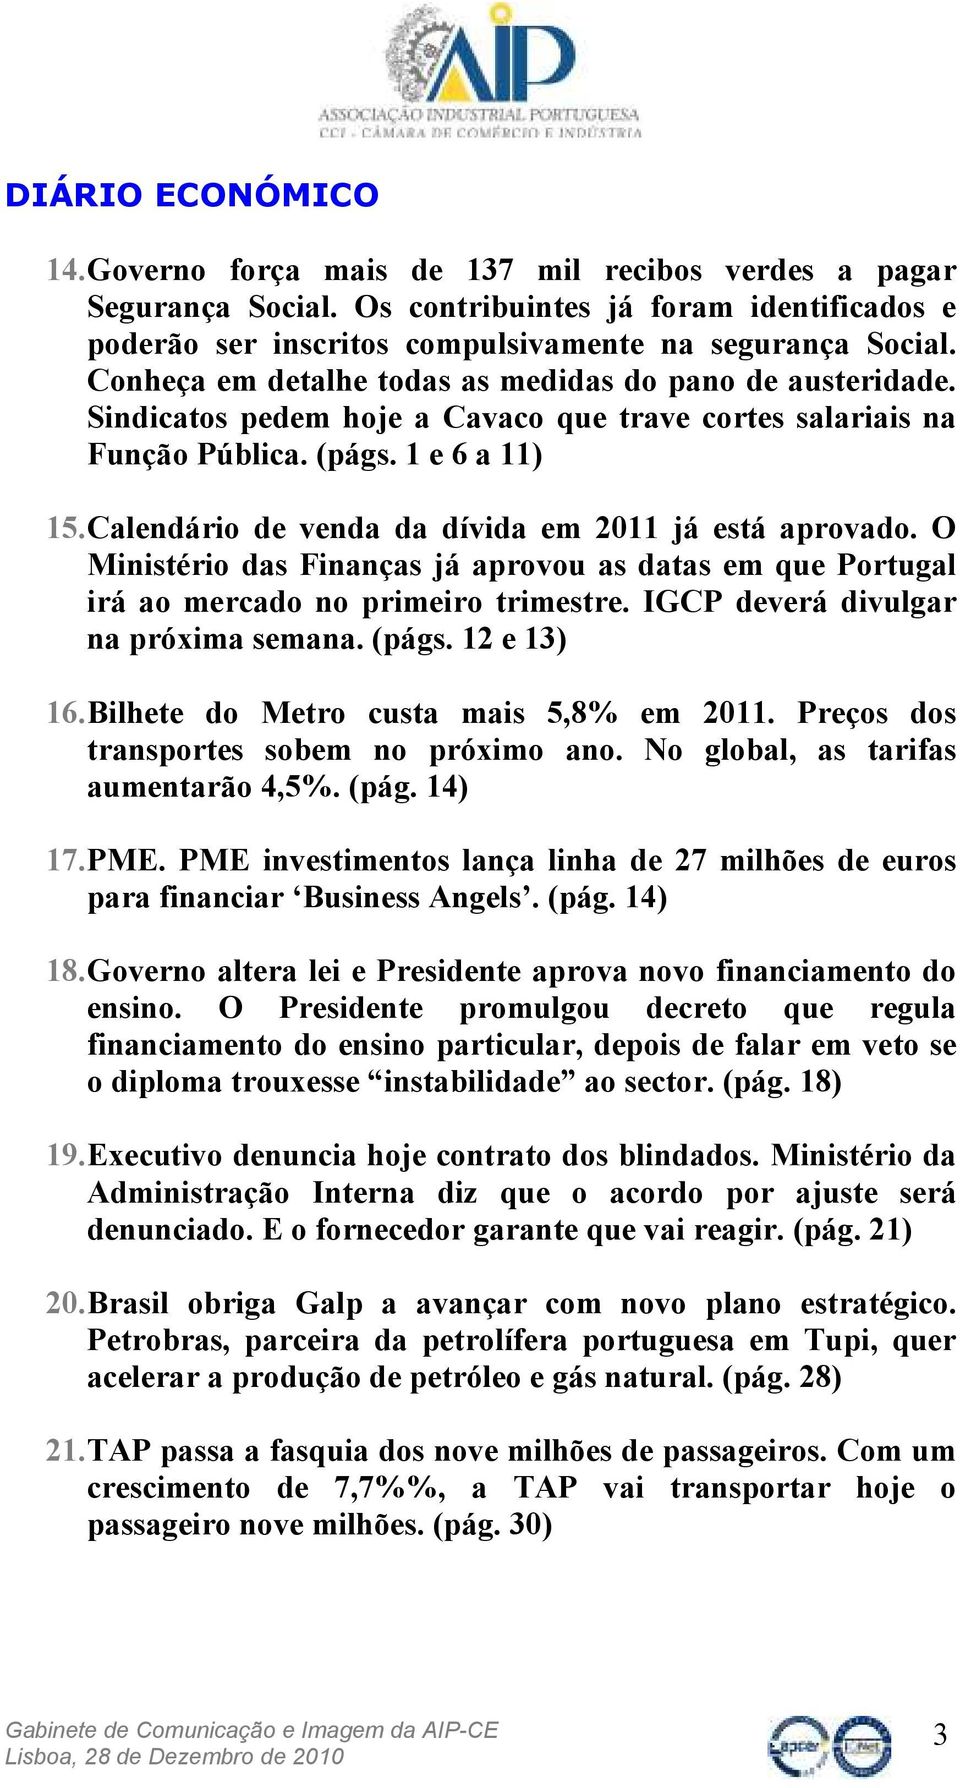 Calendário de venda da dívida em 2011 já está aprovado. O Ministério das Finanças já aprovou as datas em que Portugal irá ao mercado no primeiro trimestre. IGCP deverá divulgar na próxima semana.